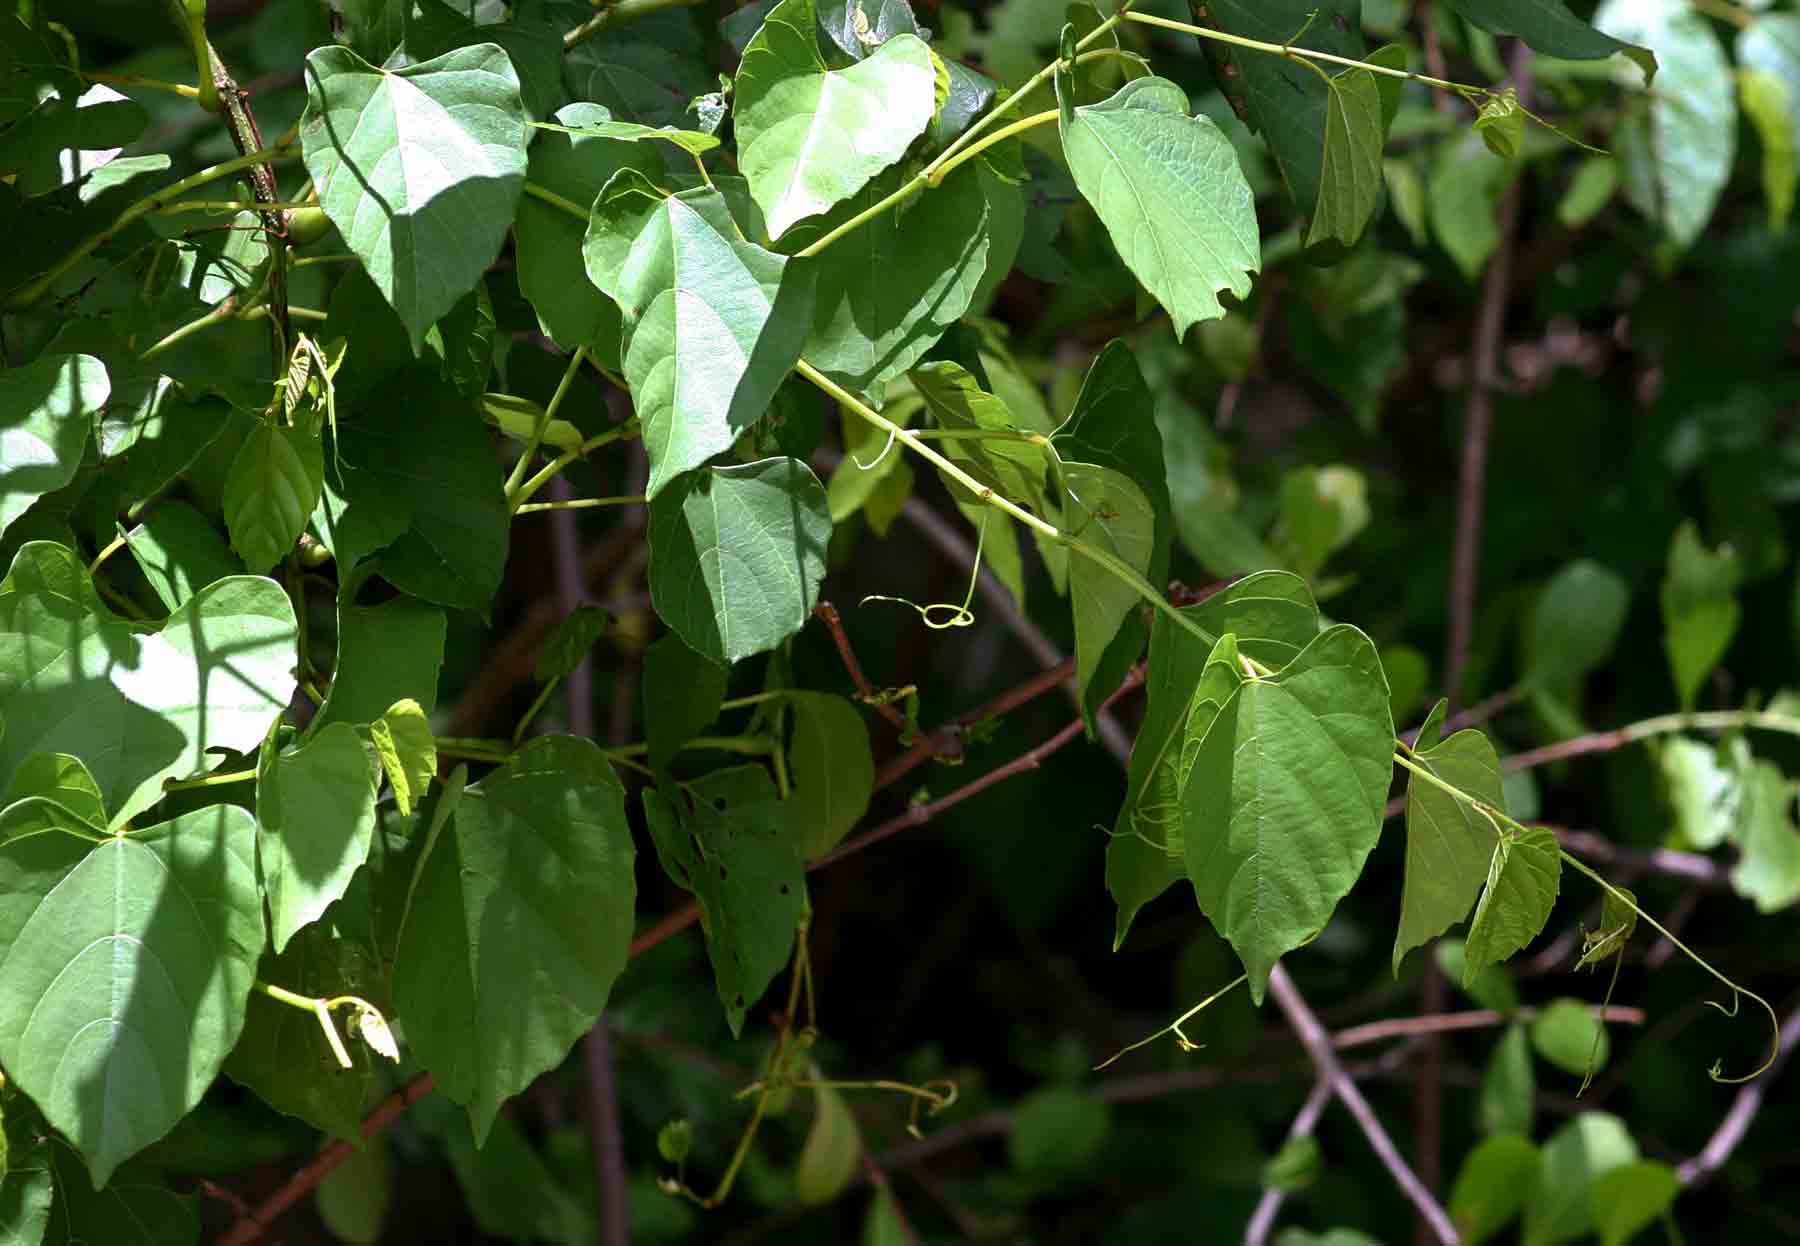 Cissus integrifolia